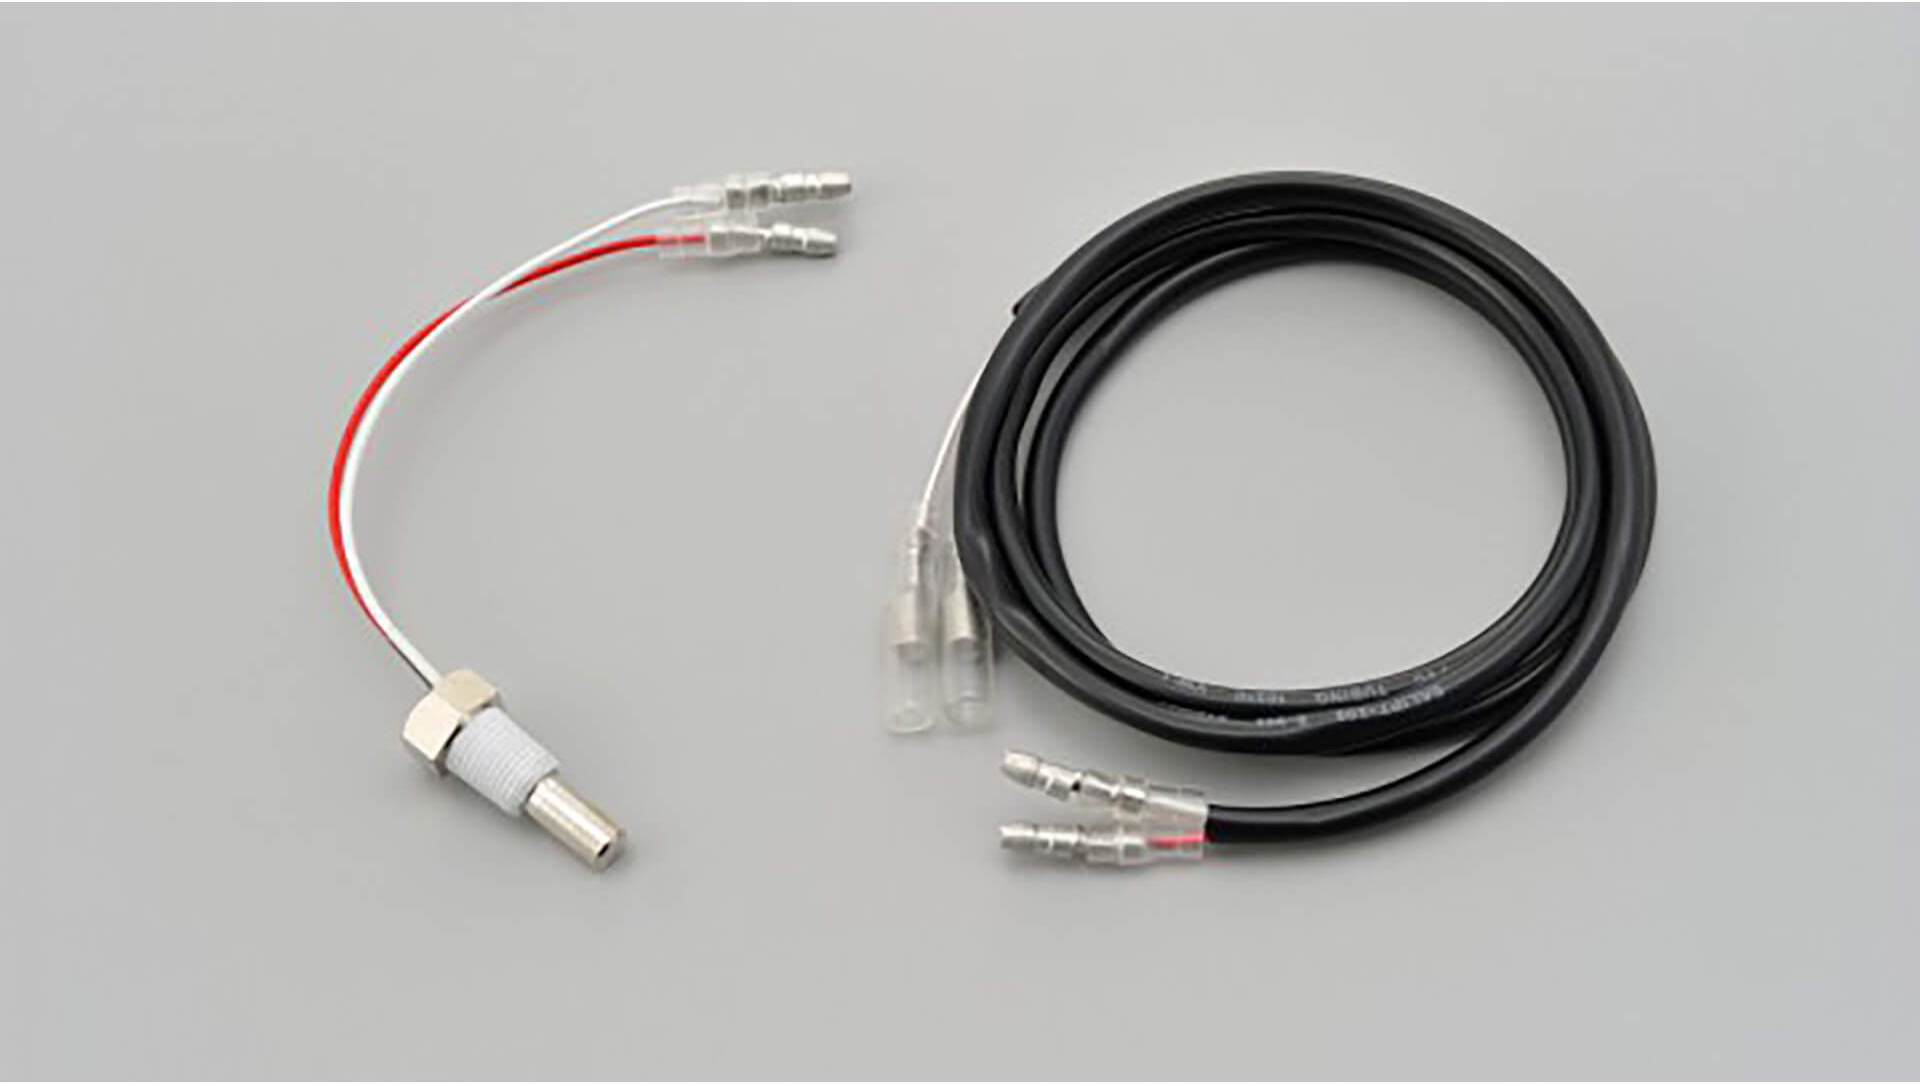 DAYTONA Corp. Temperatuursensor met 1/8 inch schroefdraad en externe kabel voor VELONA instrumenten